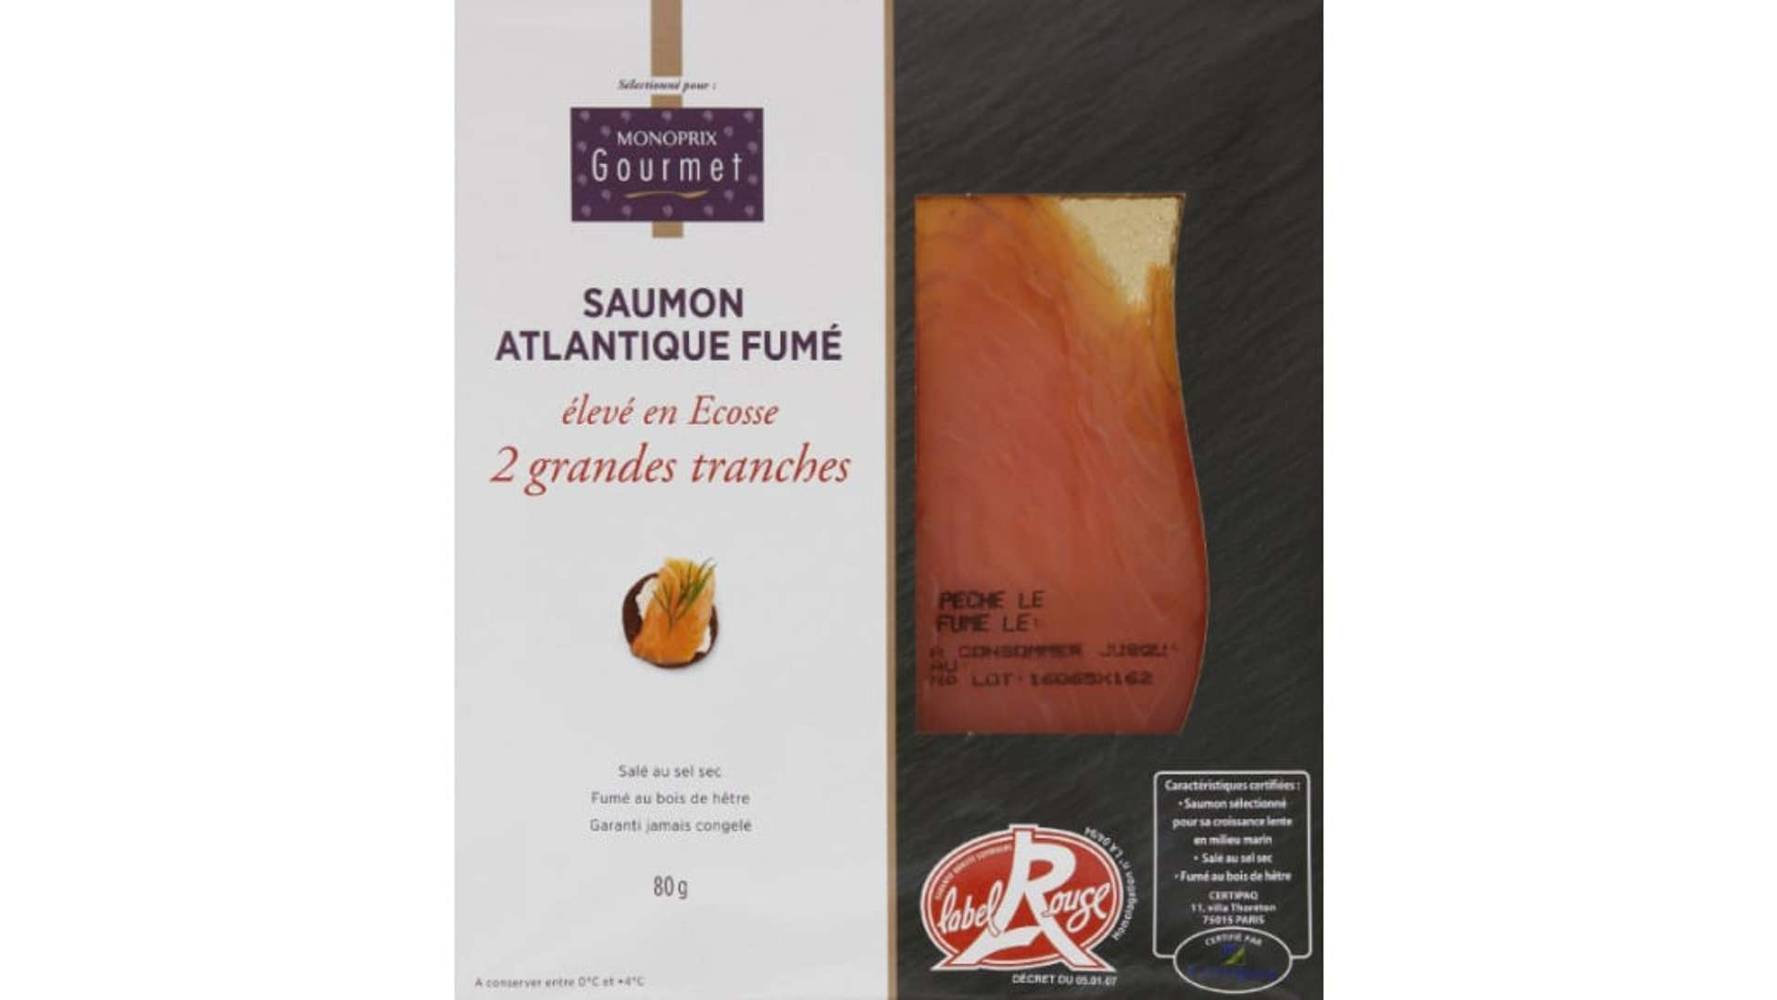 Monoprix Gourmet - Saumon atlantique fumé label rouge